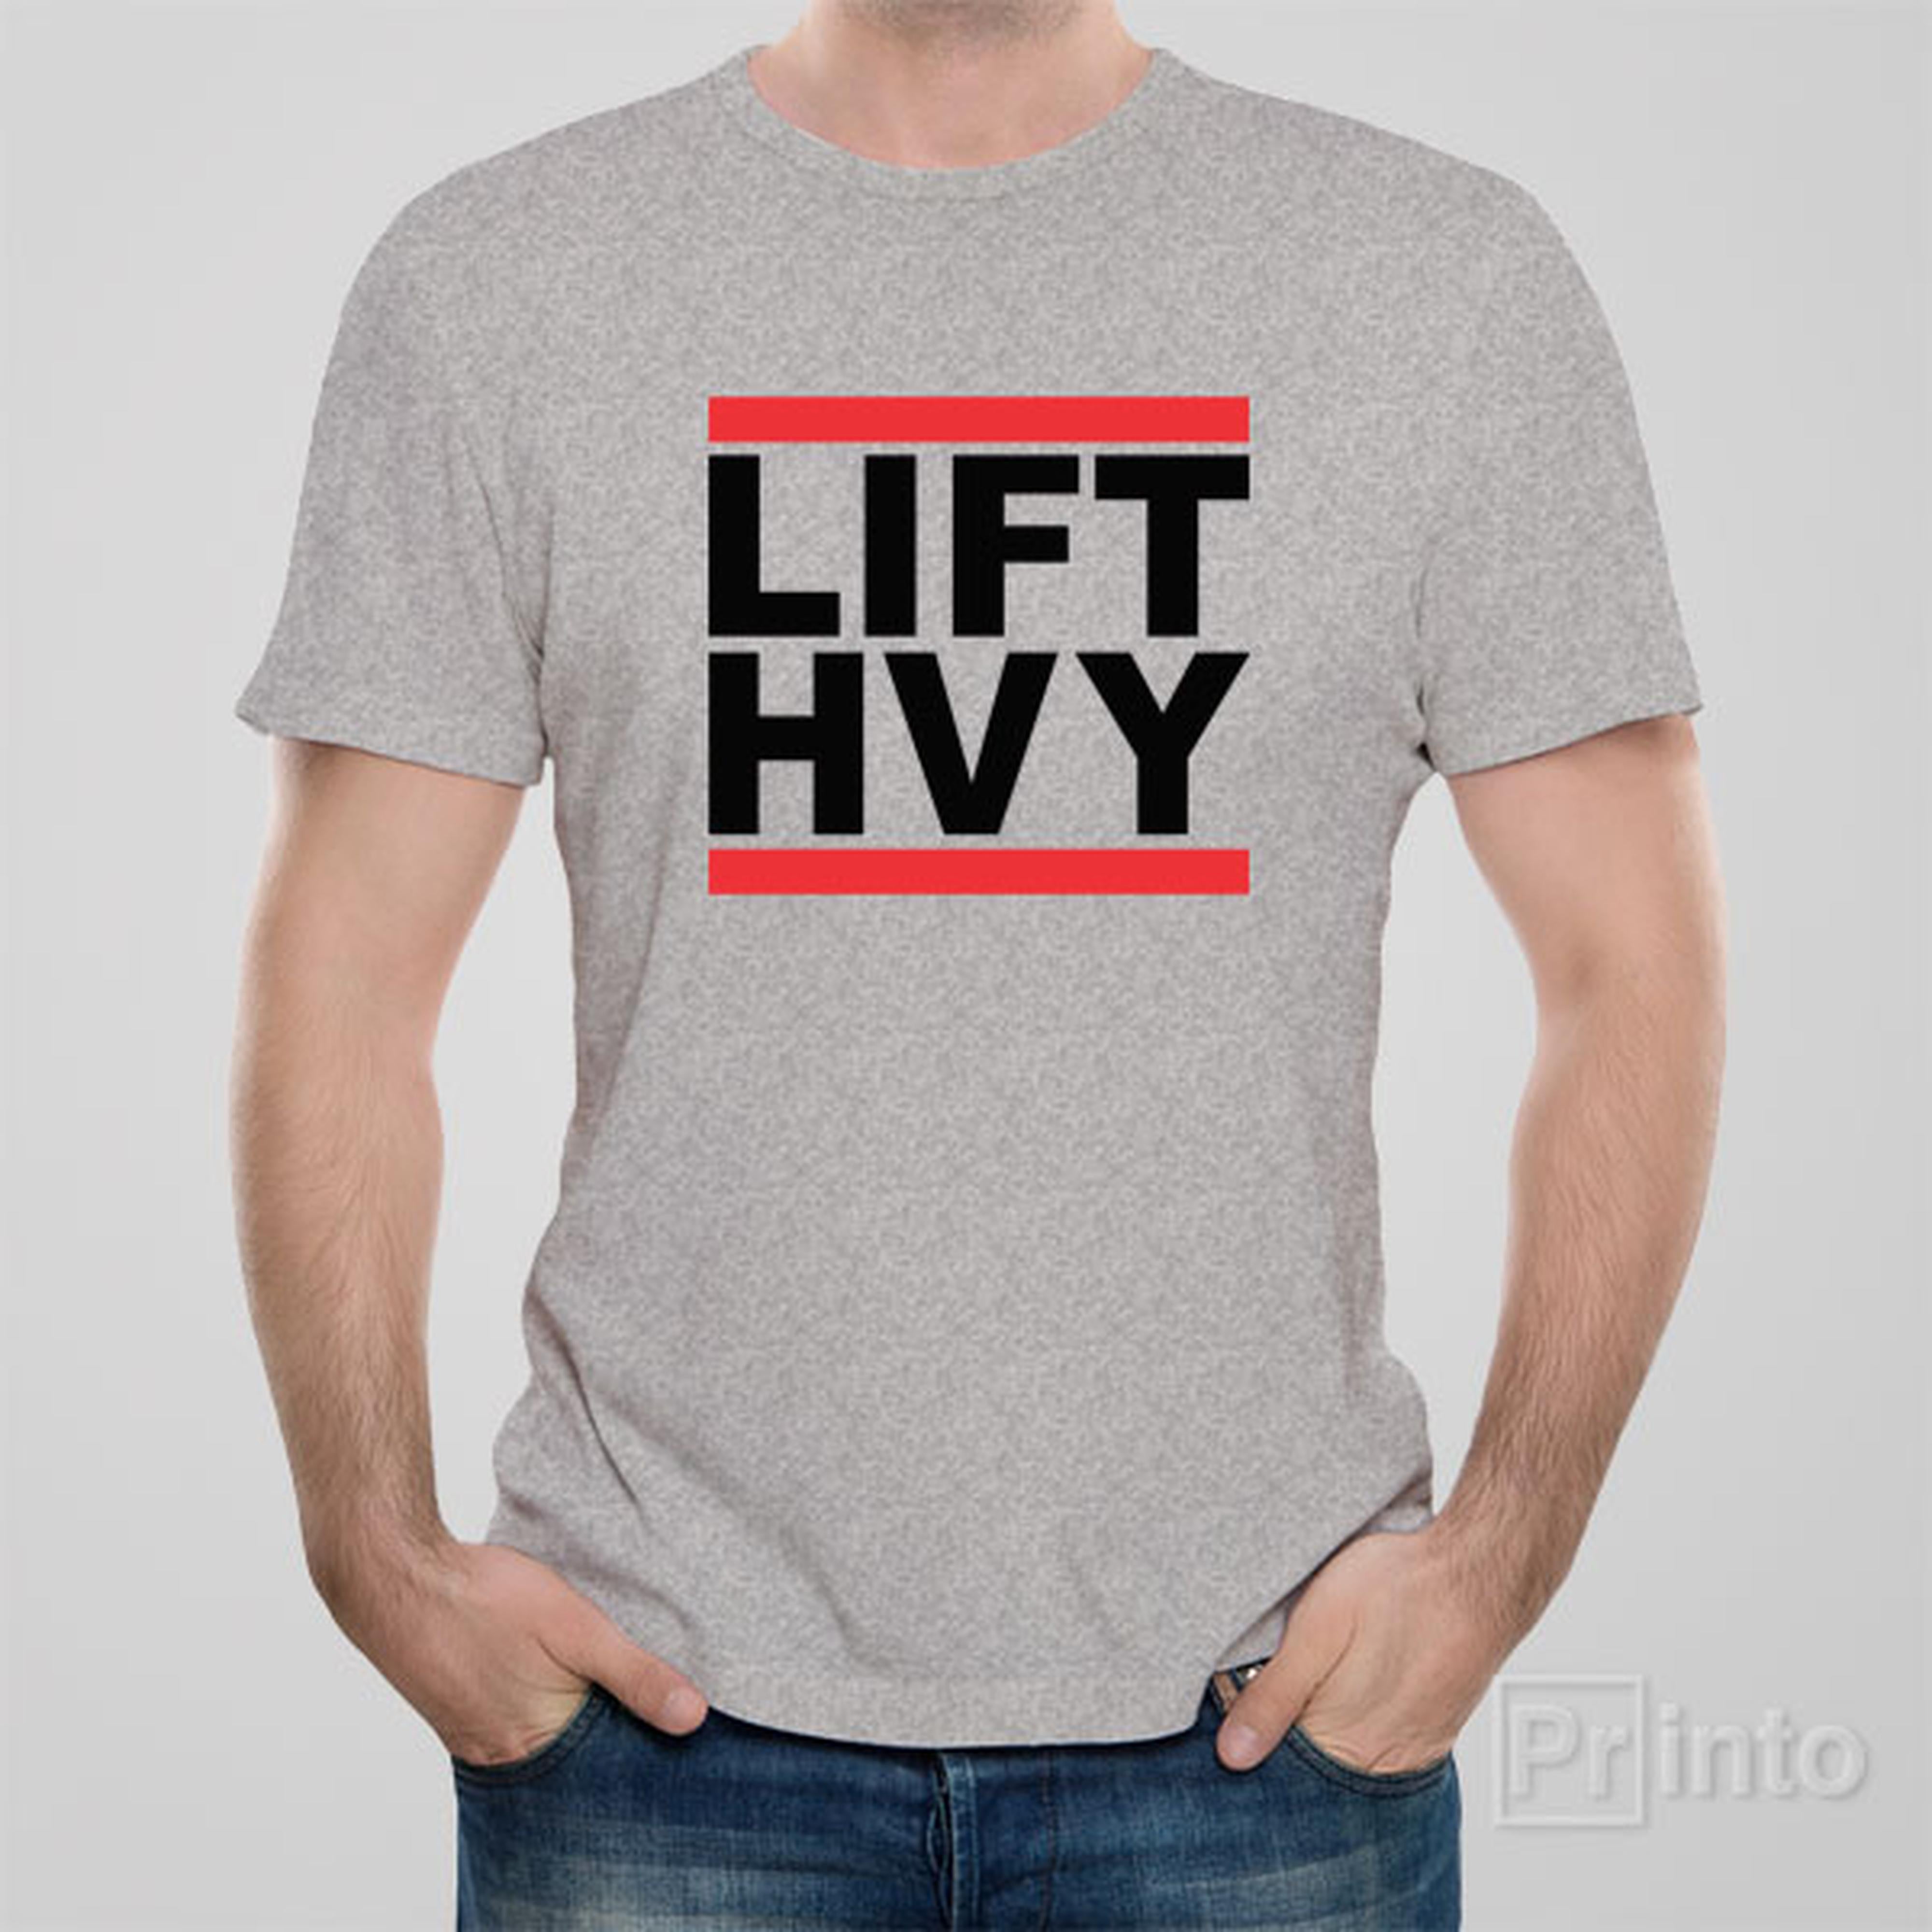 lft-hvy-lift-heavy